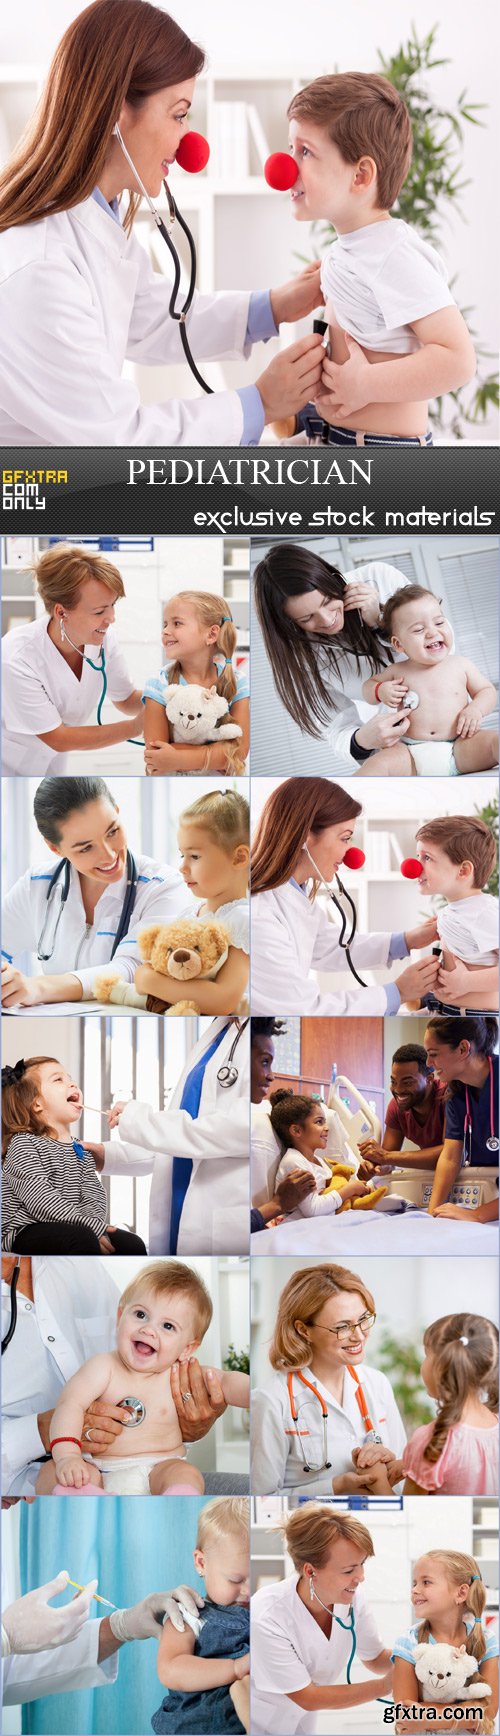 pediatrician - 9  JPRGs